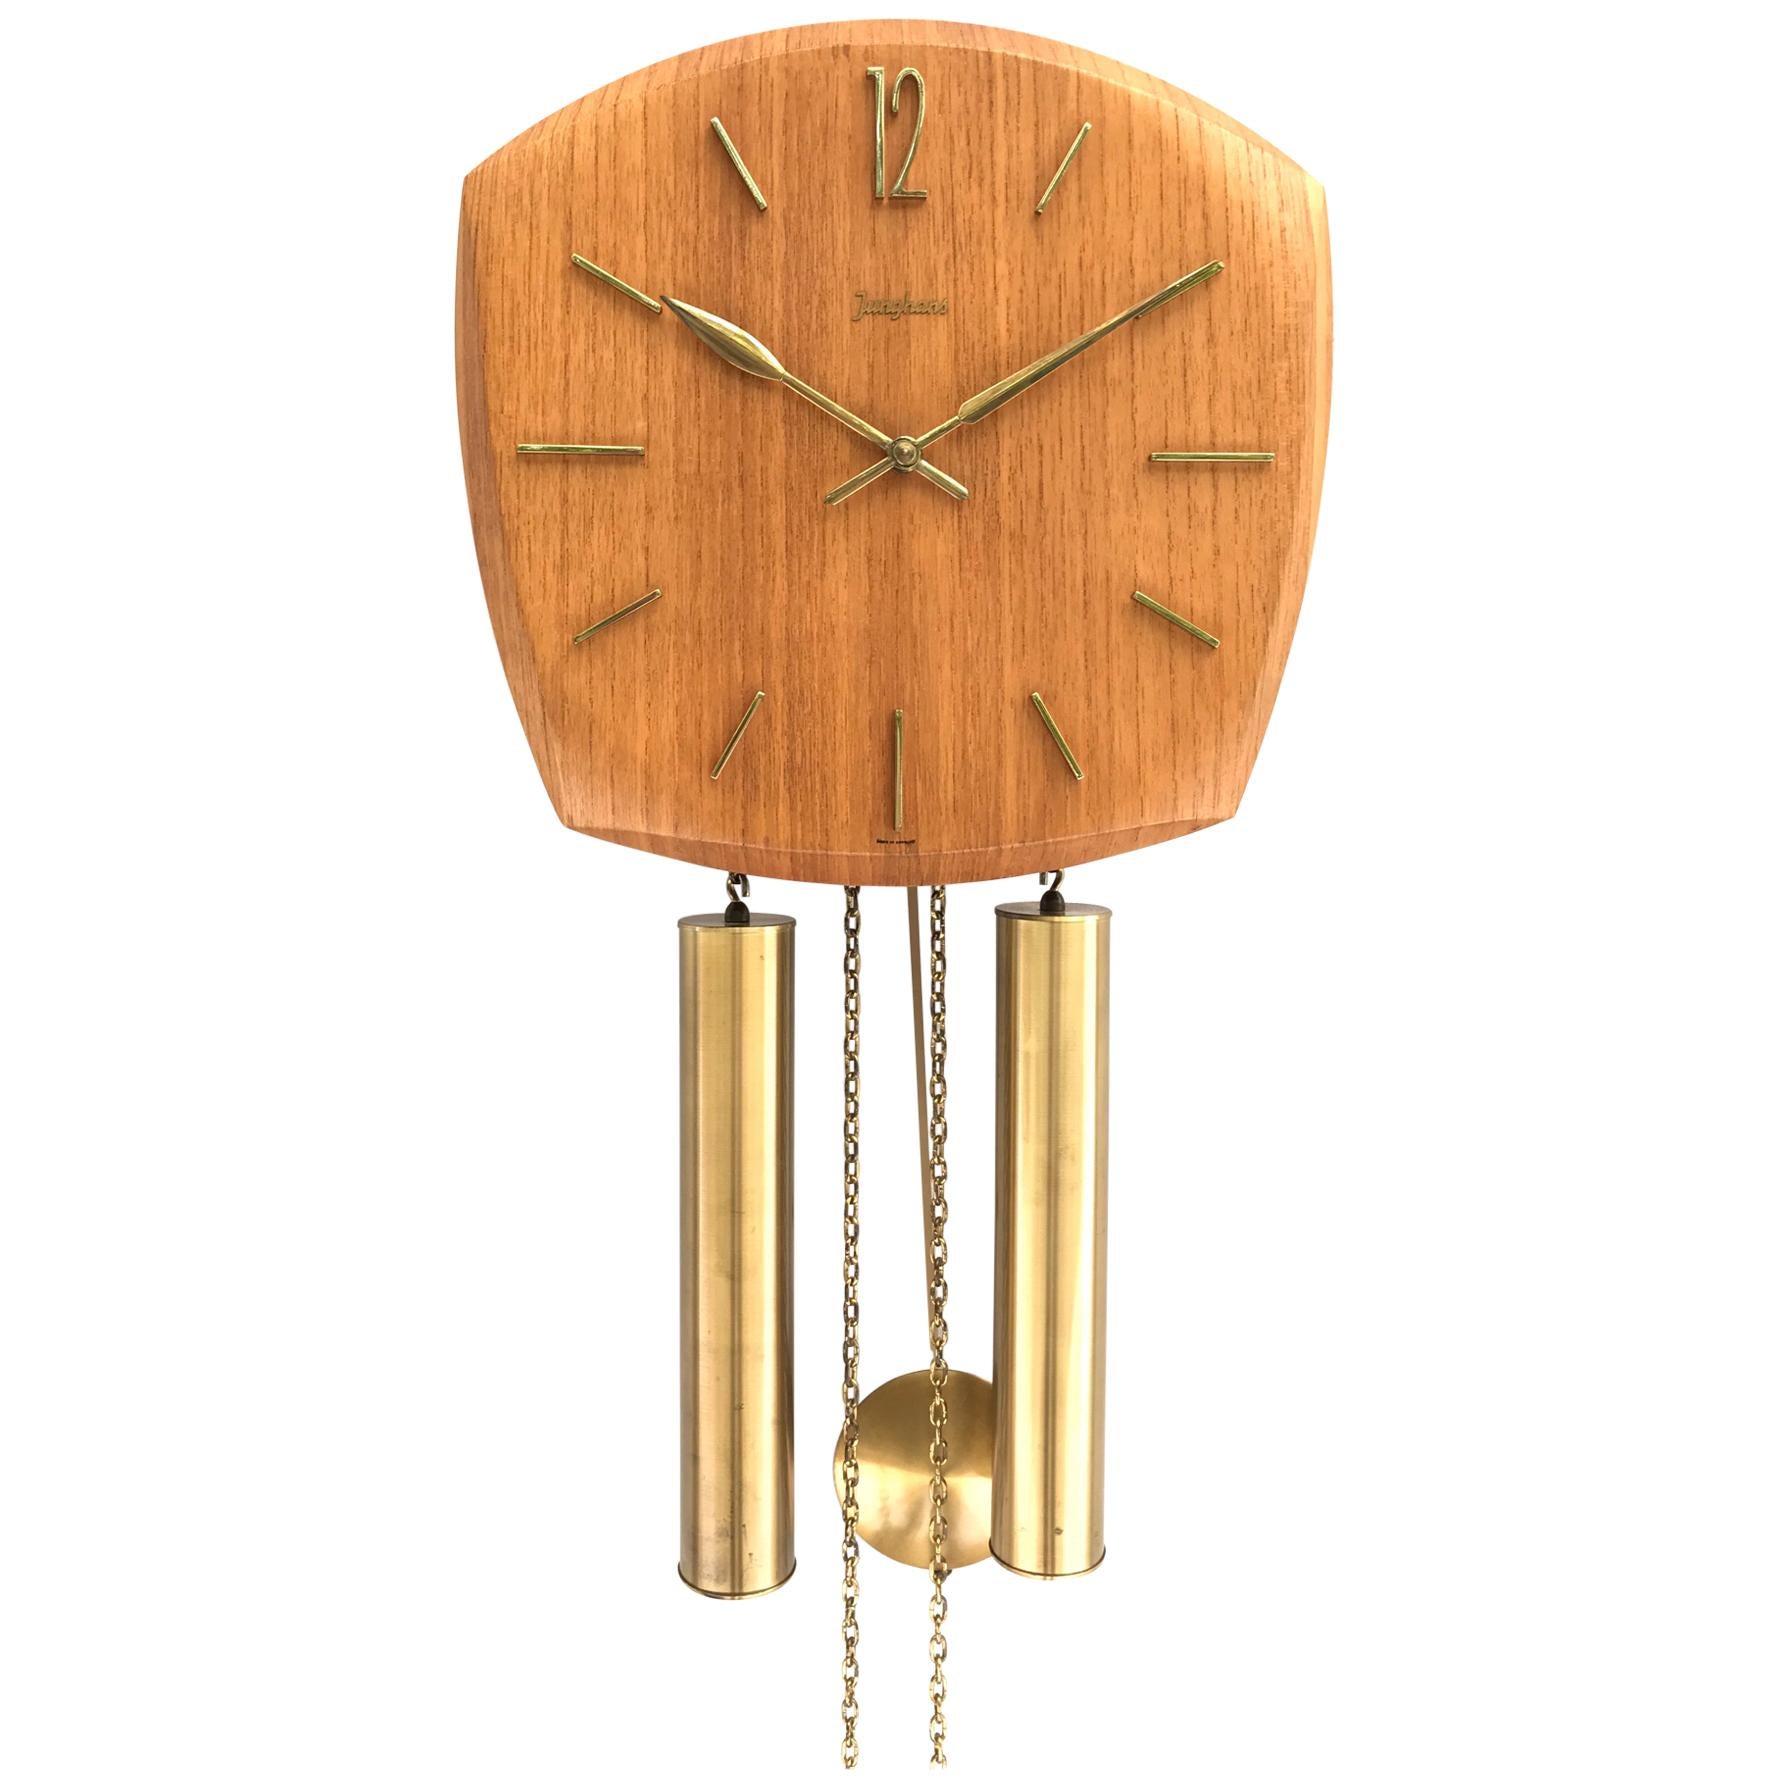 Vintage Junghans Pendulum Wall Clock in Form Pressed Teak Veneer from the 1960s